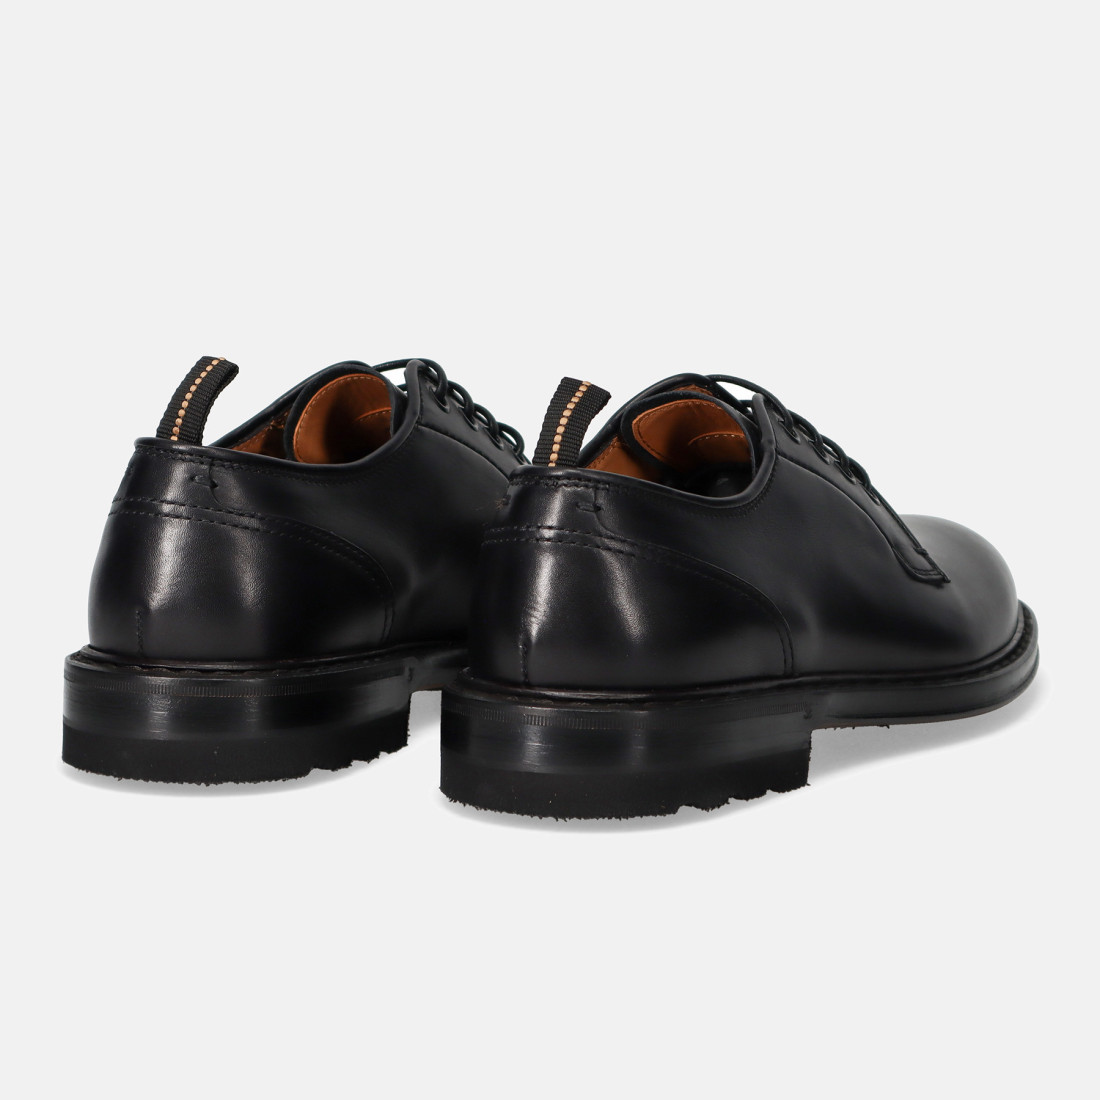 Fabi men's derby shoe in soft black leather